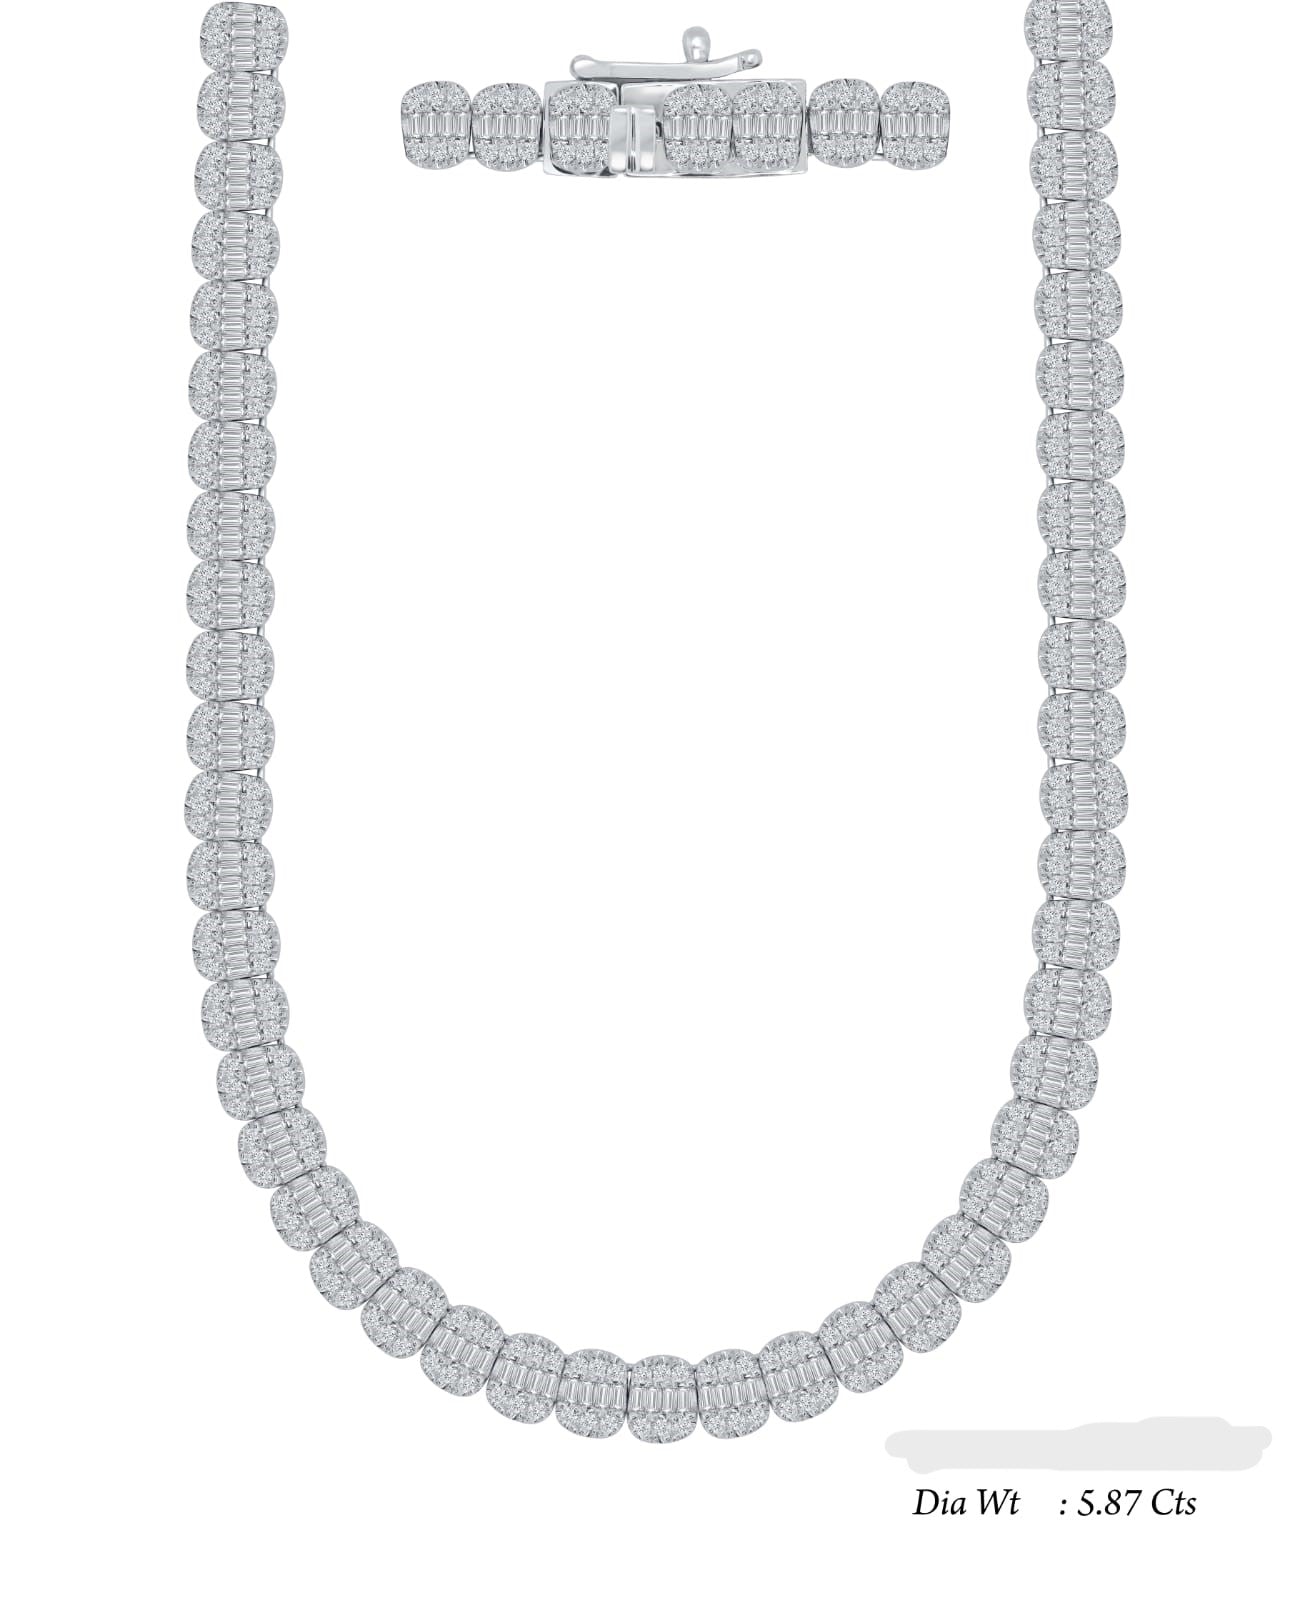 14KW 5.87ctw Diamond Necklace